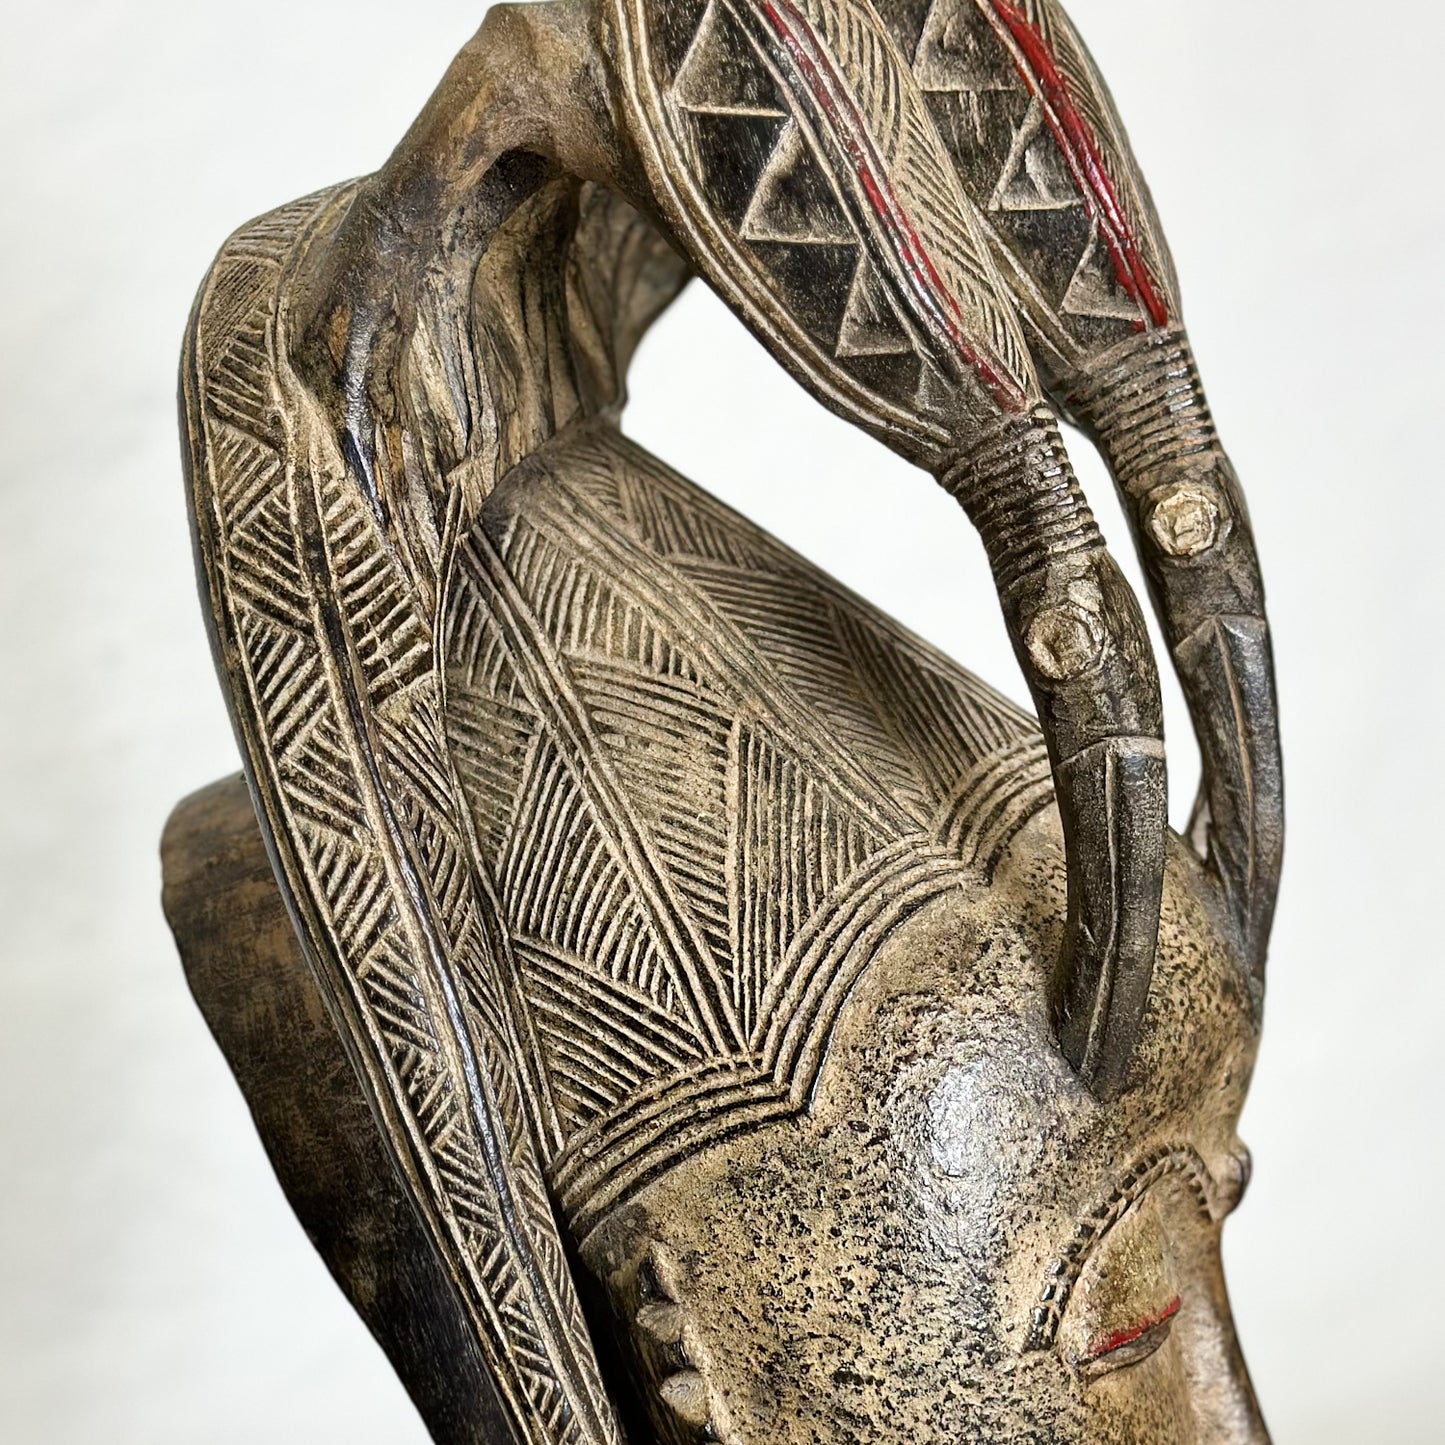 3 Bird Mblo Baule Mask - Ivory Coast